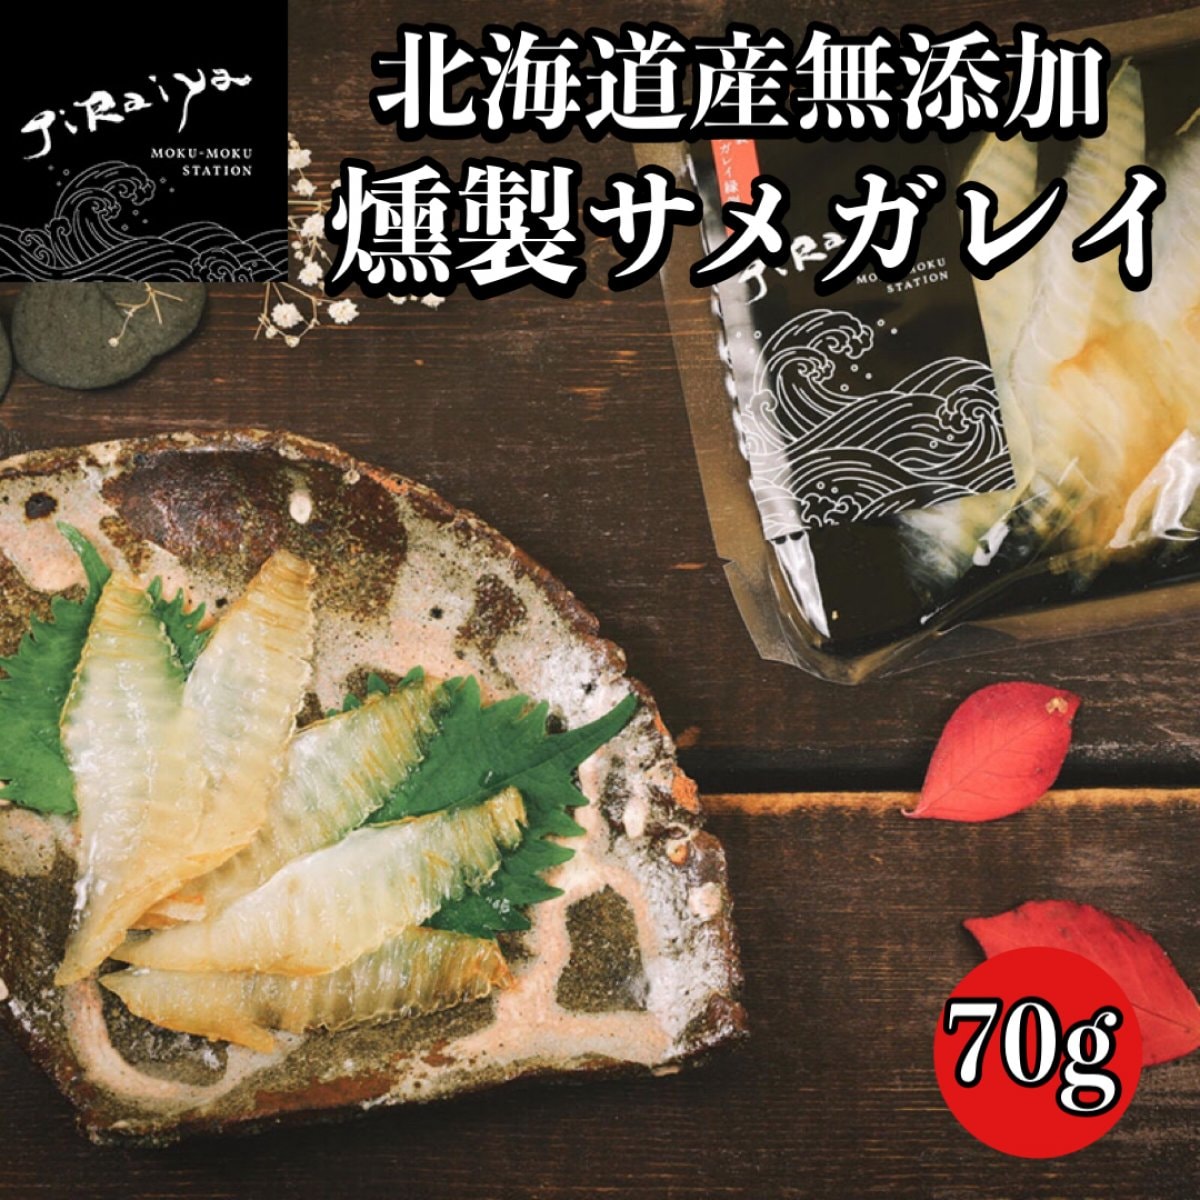 北海道産無添加燻製サメガレイ 70g【高ポイント還元中】